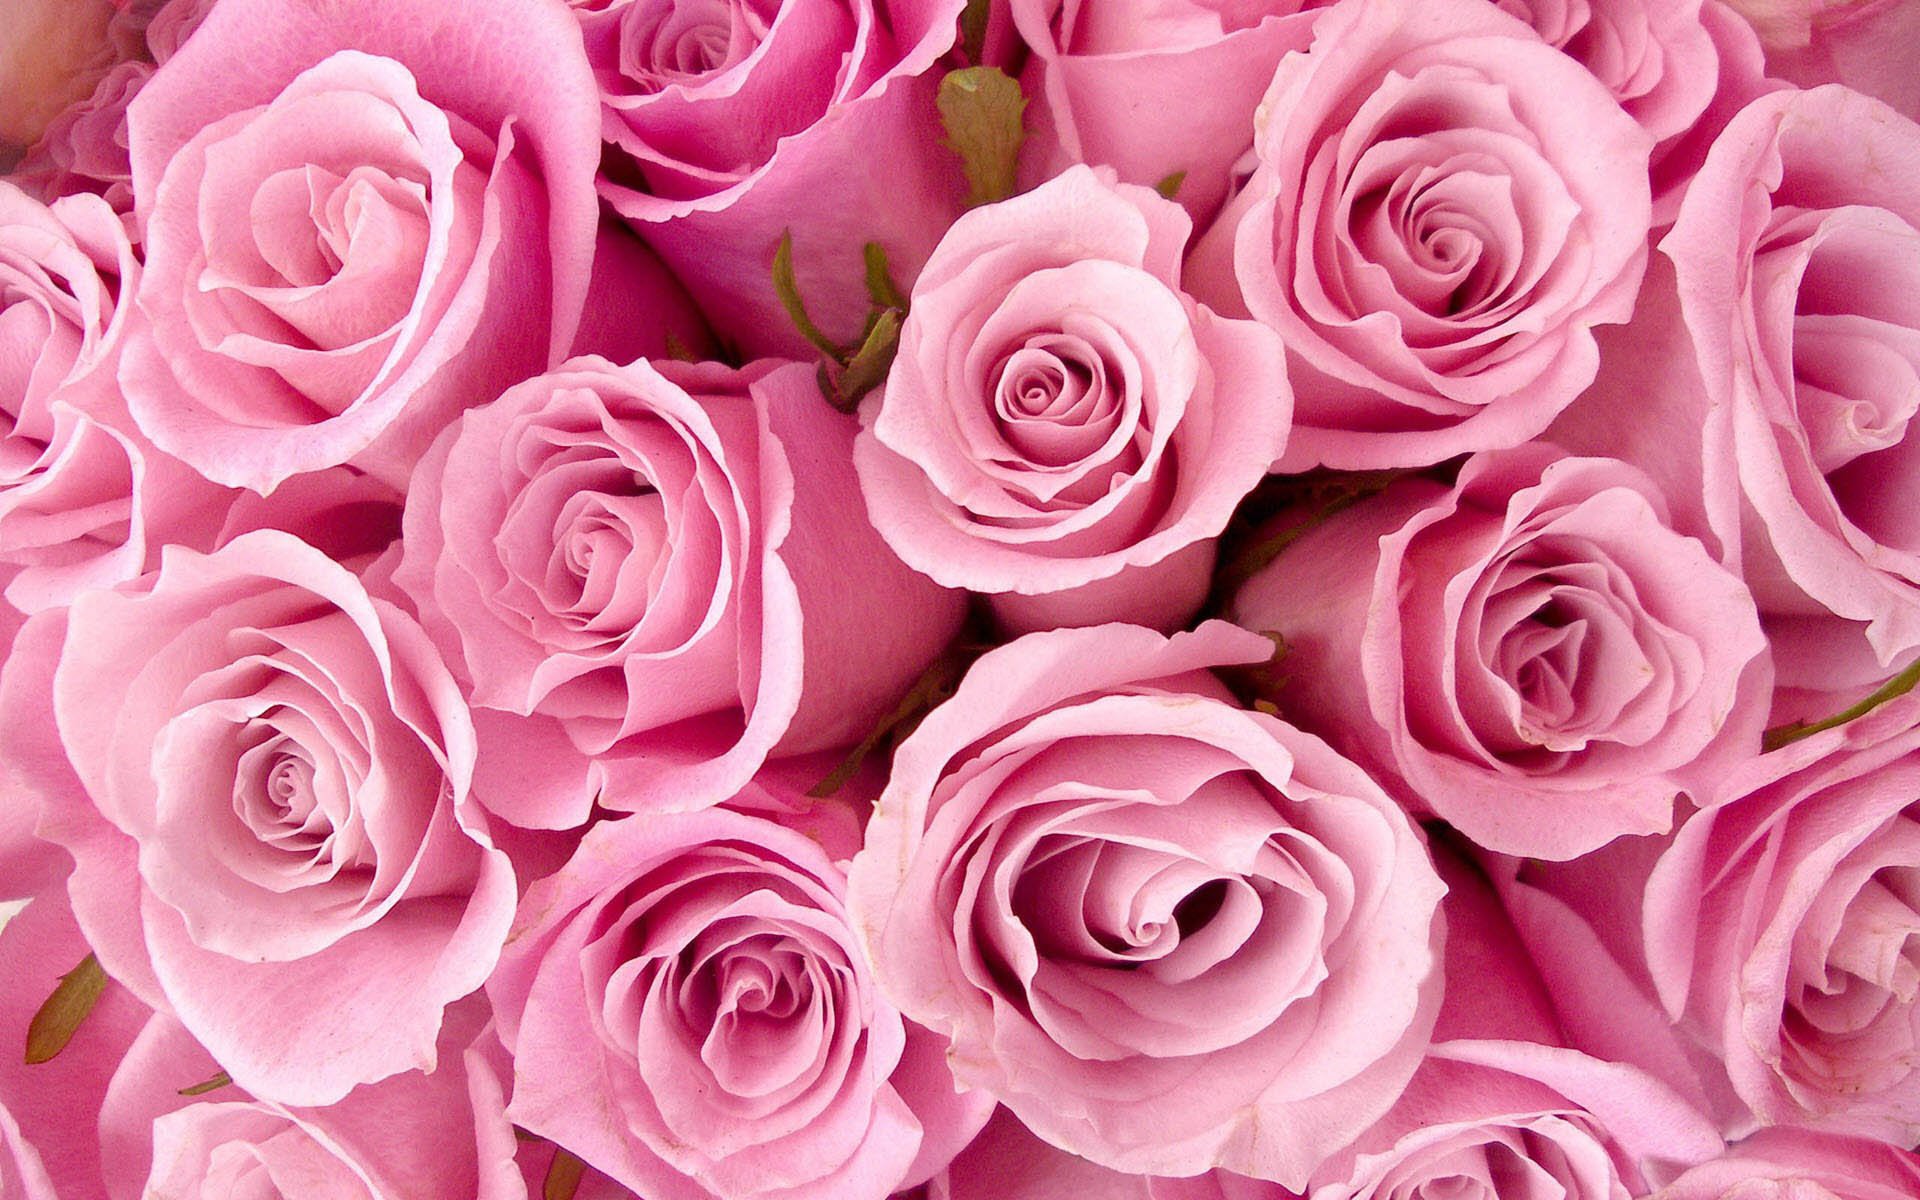 Những hình nền hoa màu hồng mới nhất đang được rất nhiều người ưa chuộng. Với sự kết hợp hoàn hảo giữa hoa hồng và màu hồng, các họa tiết hoa tươi sáng, độc đáo, chắc chắn sẽ làm người sử dụng điện thoại cảm thấy thích thú và muốn khám phá thêm về trải nghiệm này.